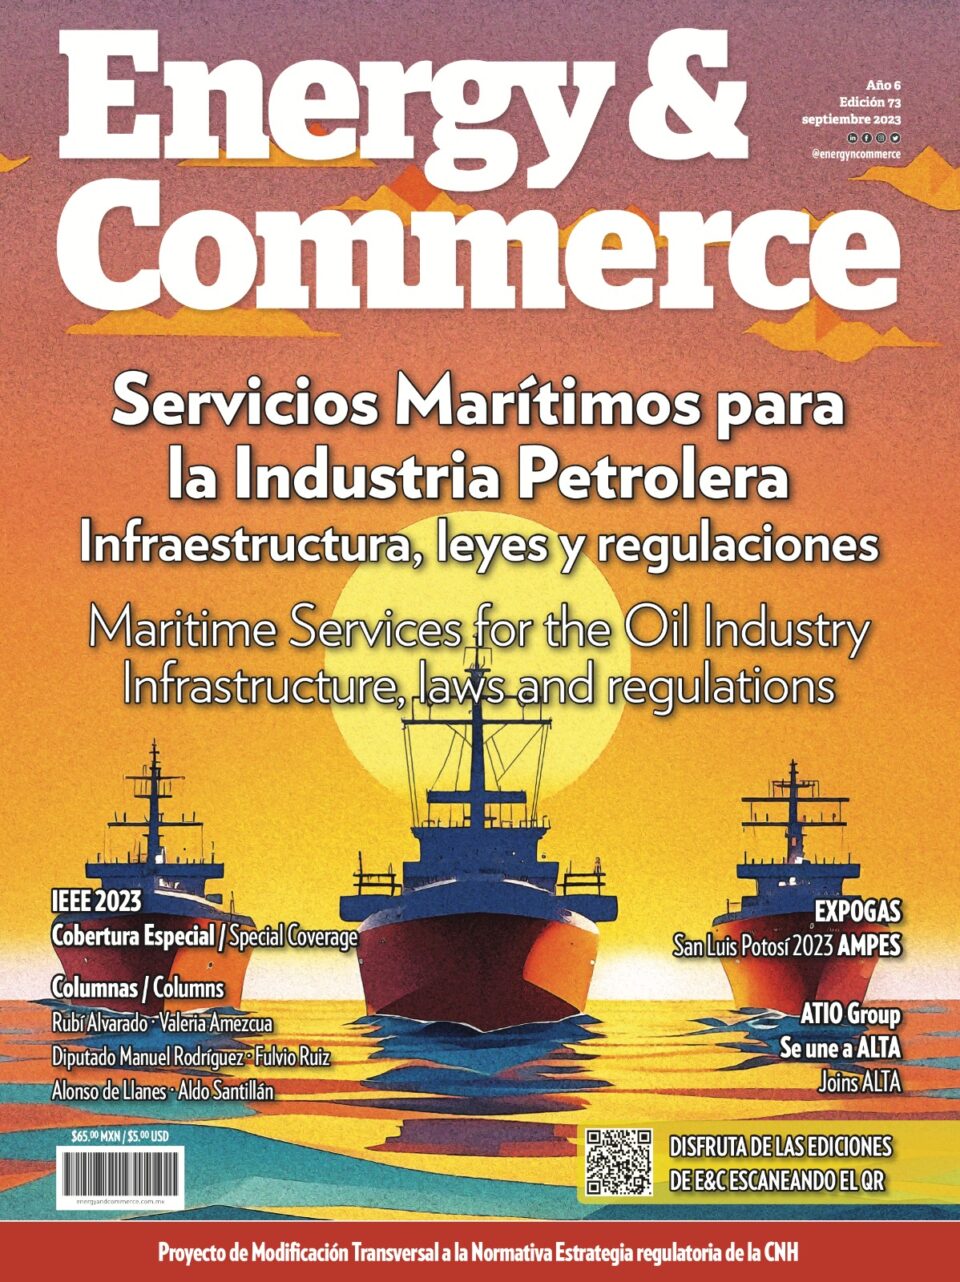 Servicios Marítimos, soporte integral para la Industria Petrolera